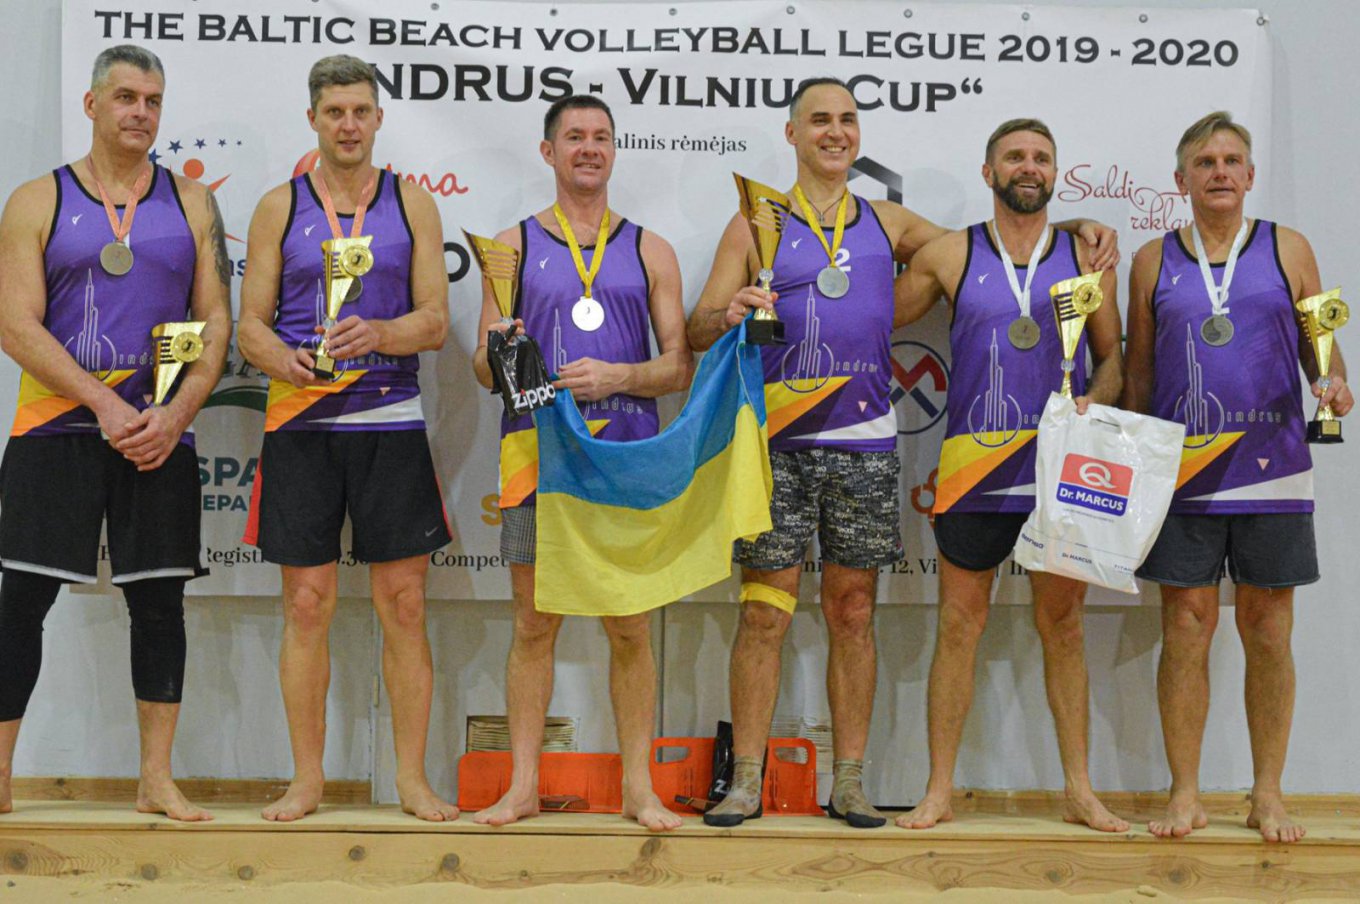 Победители Балтийской пляжной волейбольной Лиге 2019-2020 Украинцы Станислав Корнильев и Юрий Козий